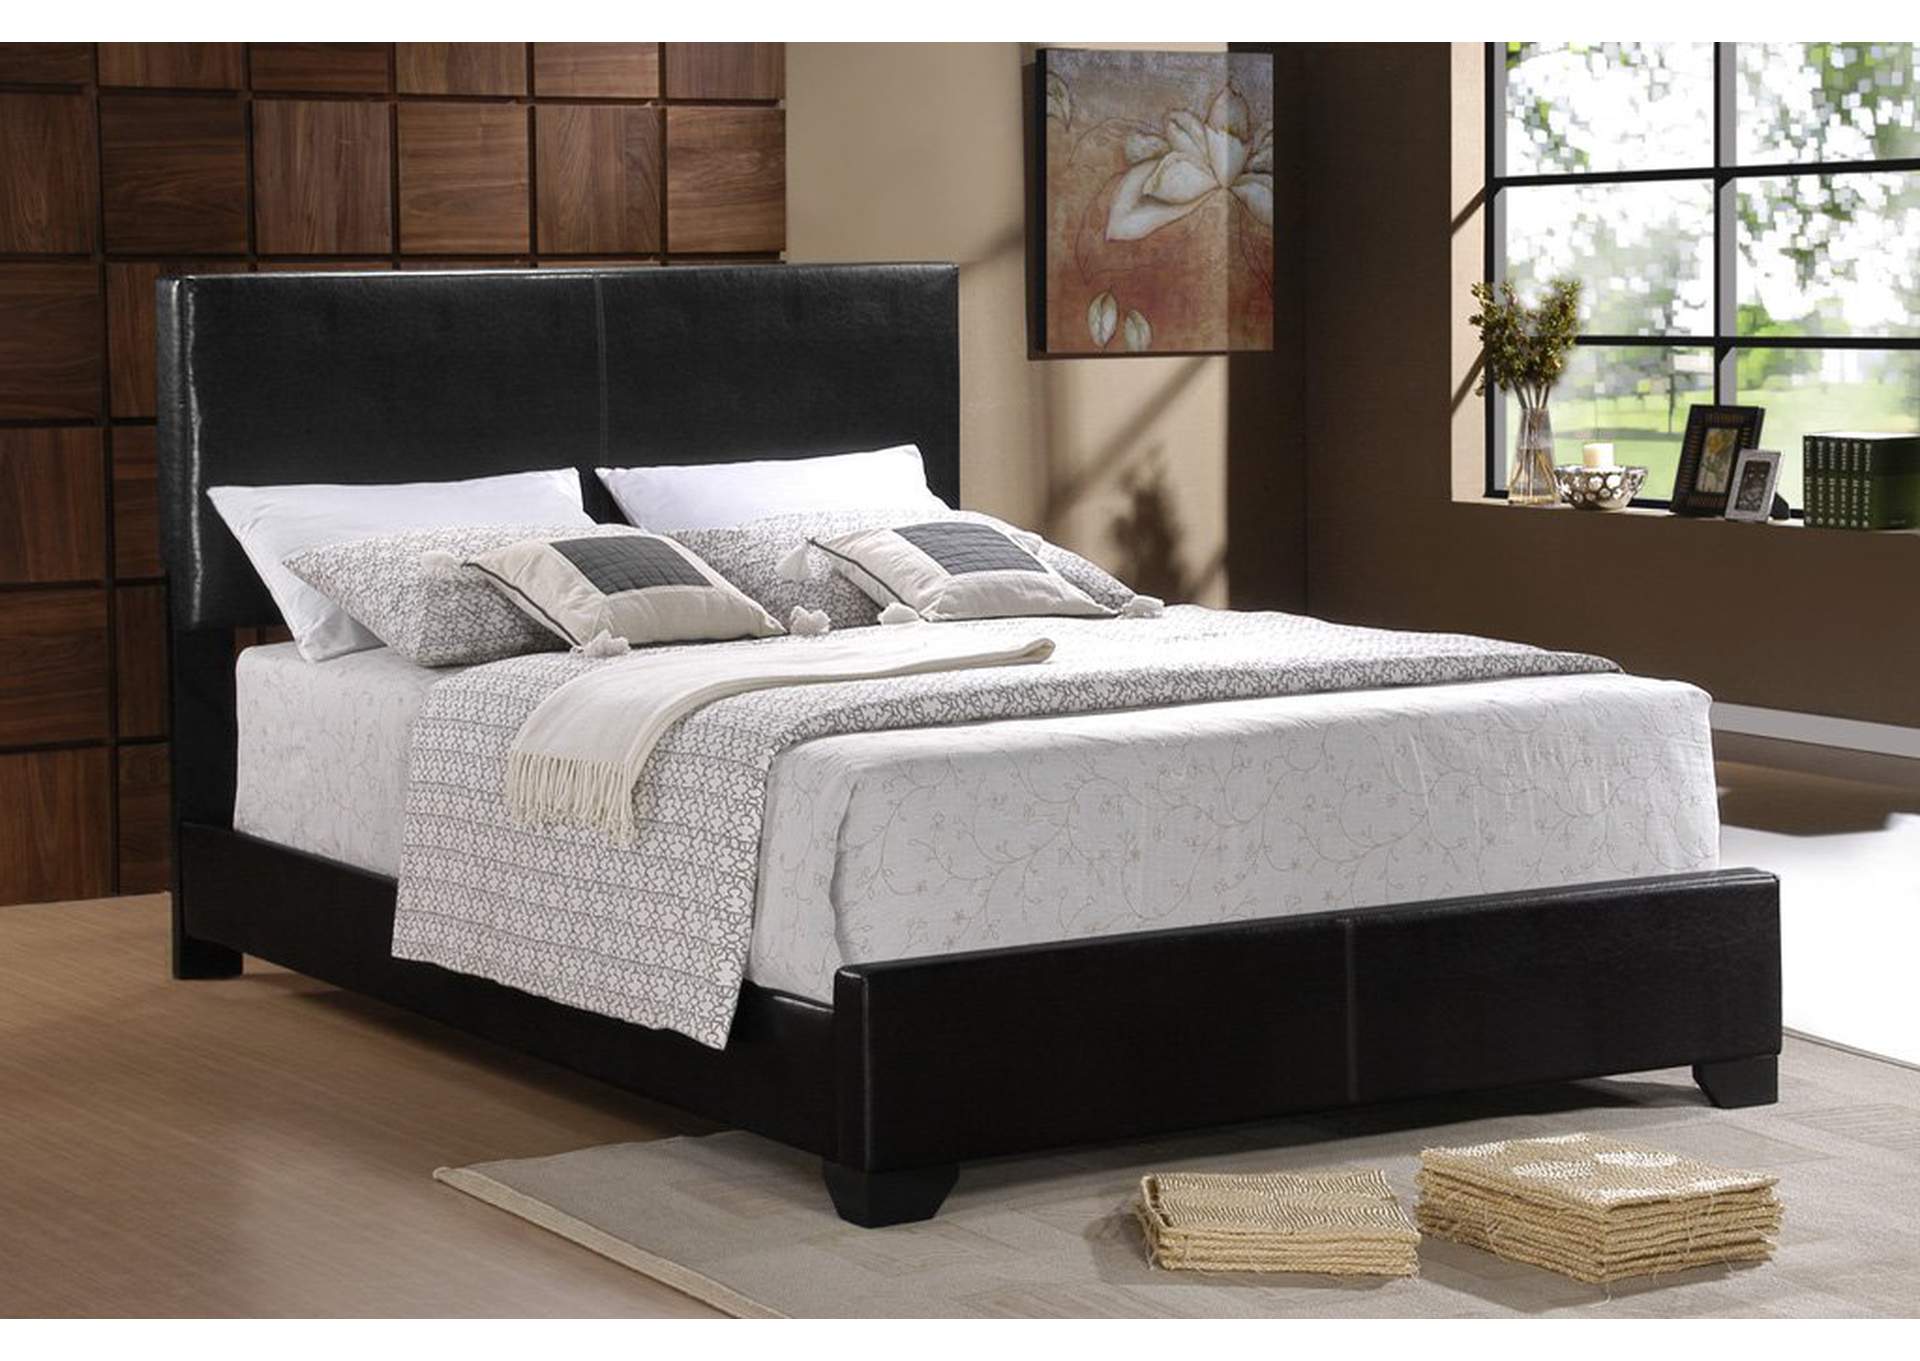 Black Upholstered Full Bed,Furniture World Distributors